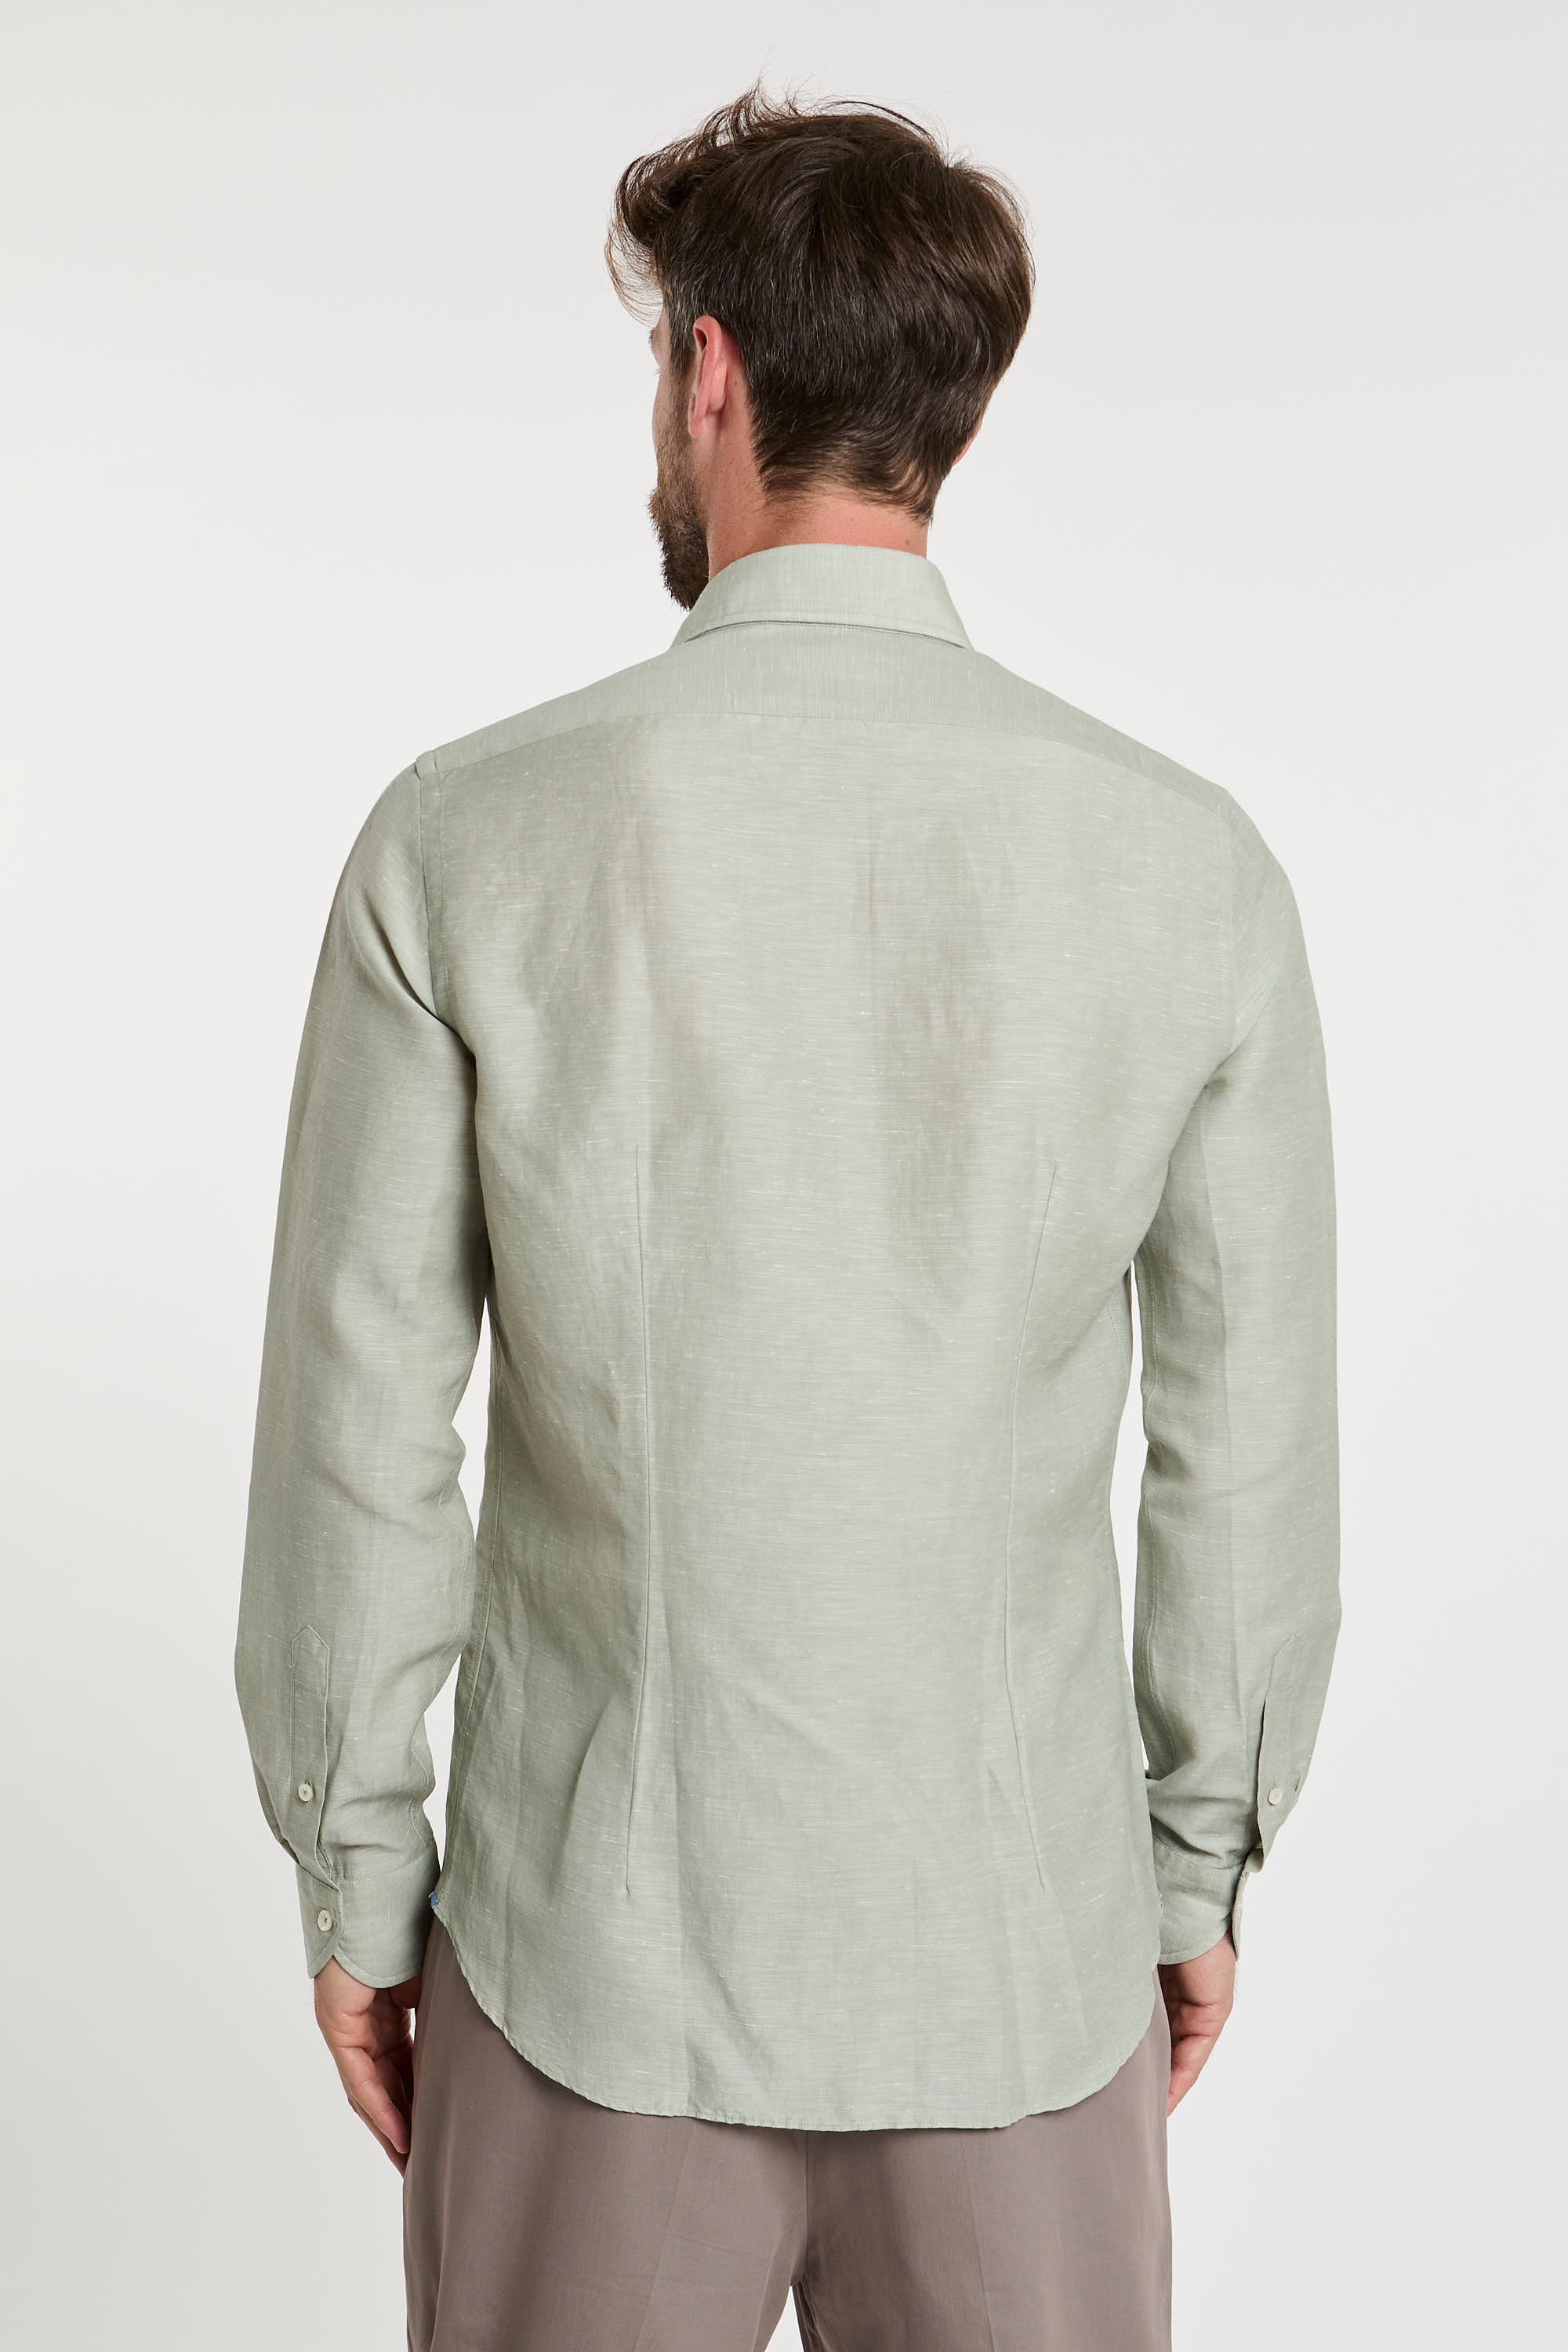 Xacus Wool and Linen Blend Green Shirt-6